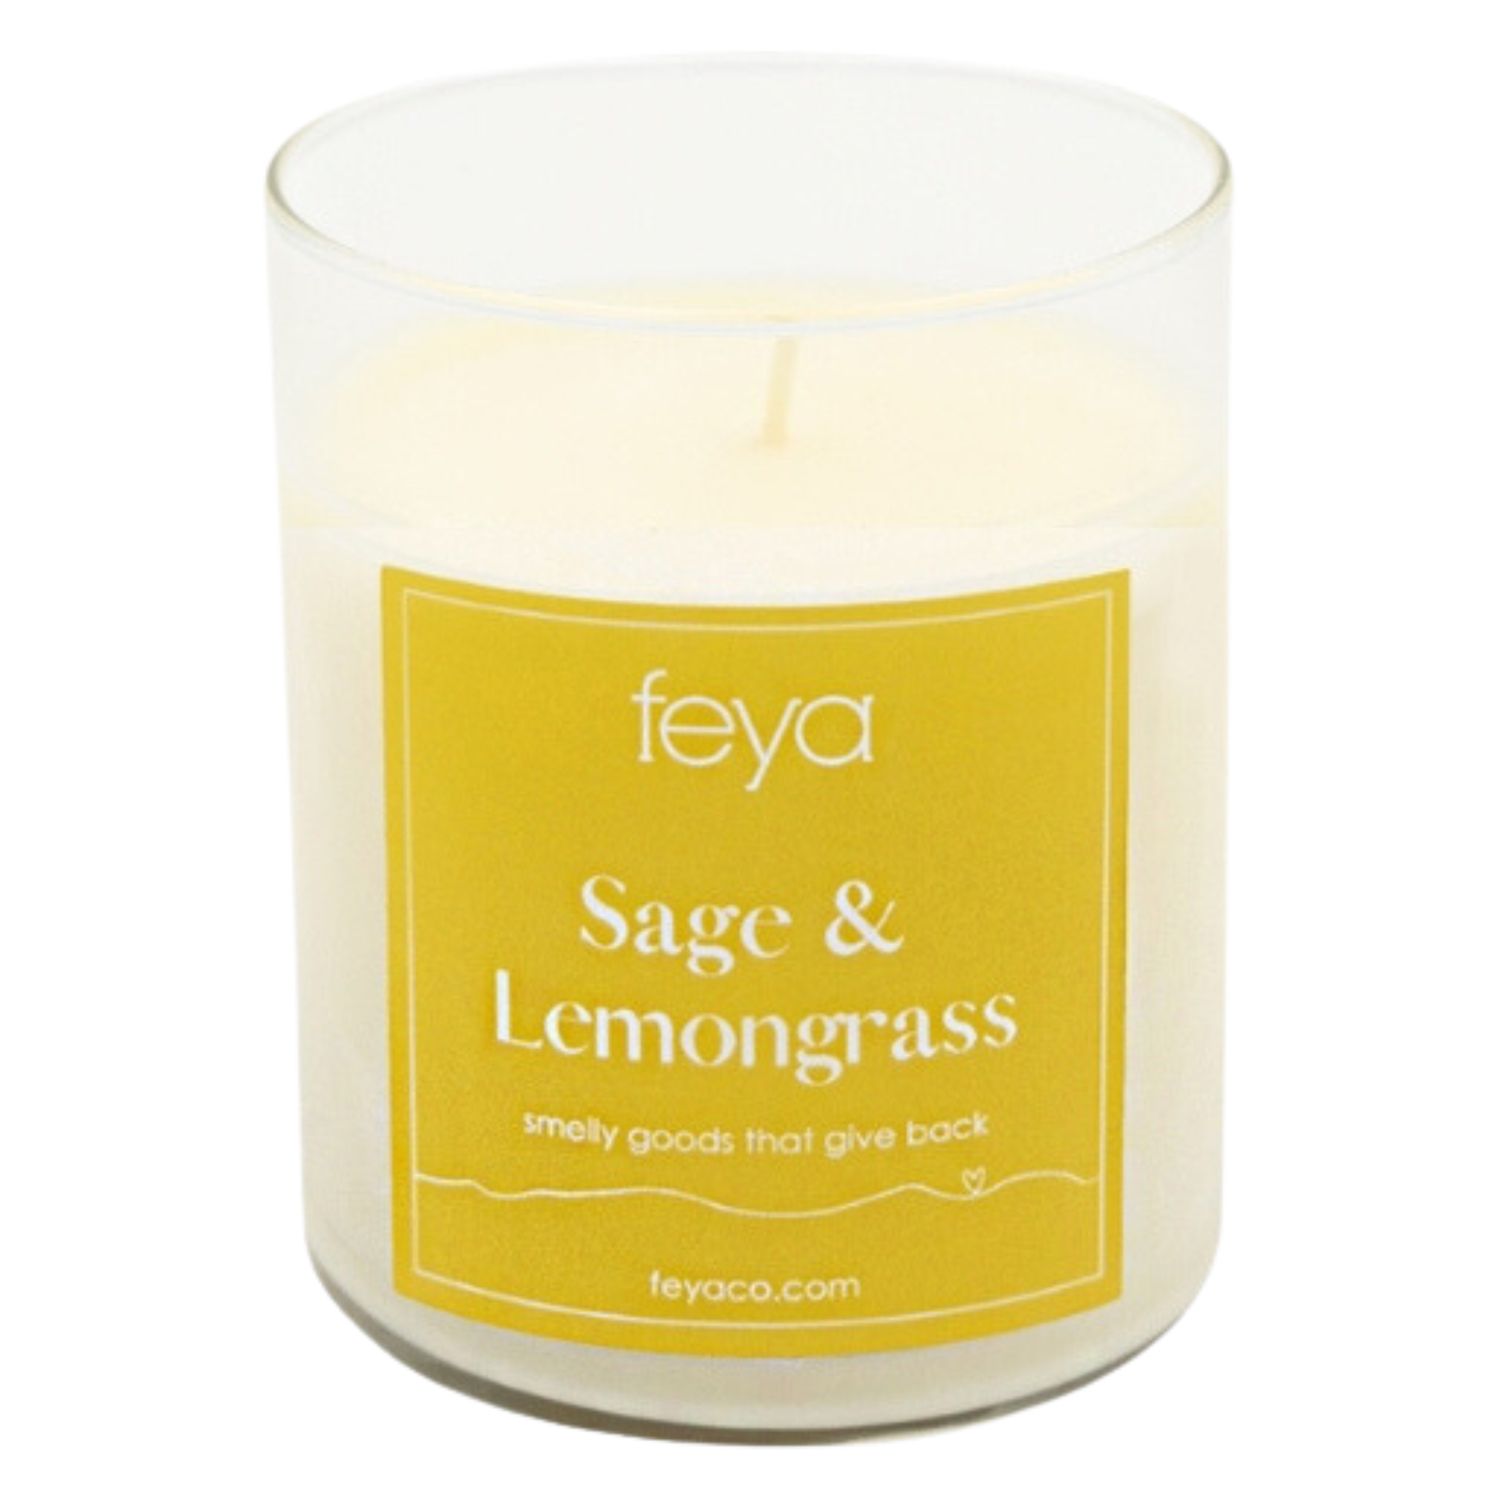 Свеча Feya с шалфеем и лемонграссом, 6,5 унций. Соевая свеча свечи feya lavender 6 5 унций соевая восковая свеча